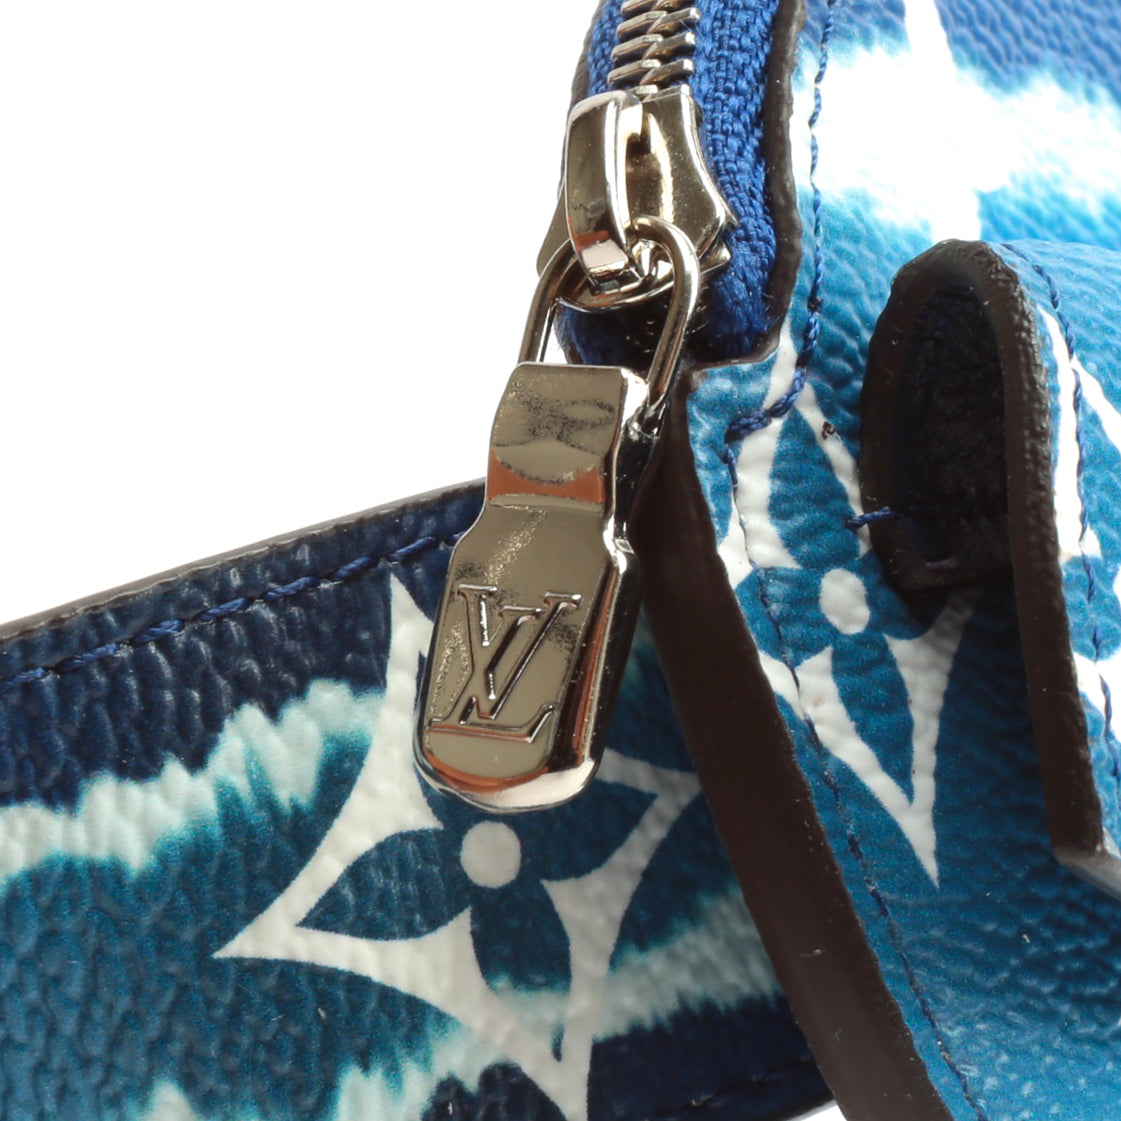 Louis Vuitton Monogram Blue Escale Daily Multi Pocket 30MM Belt Bag